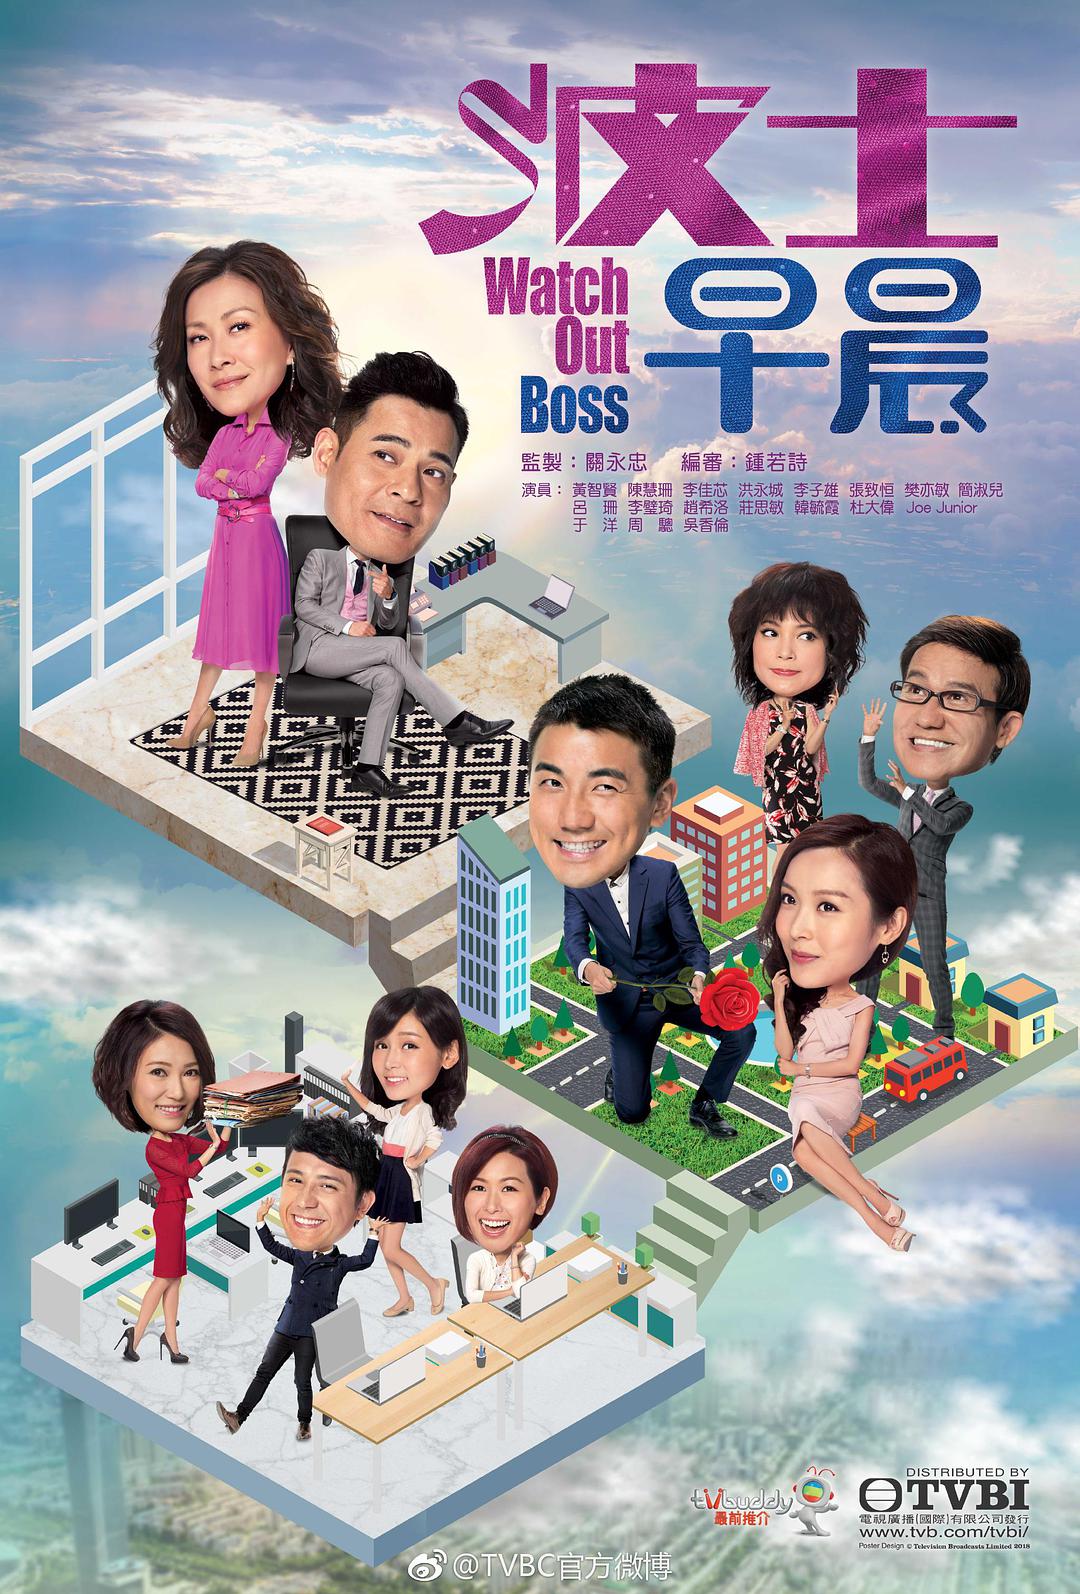 HK TV Drama, HK drama, tvb drama, Watch Out Boss